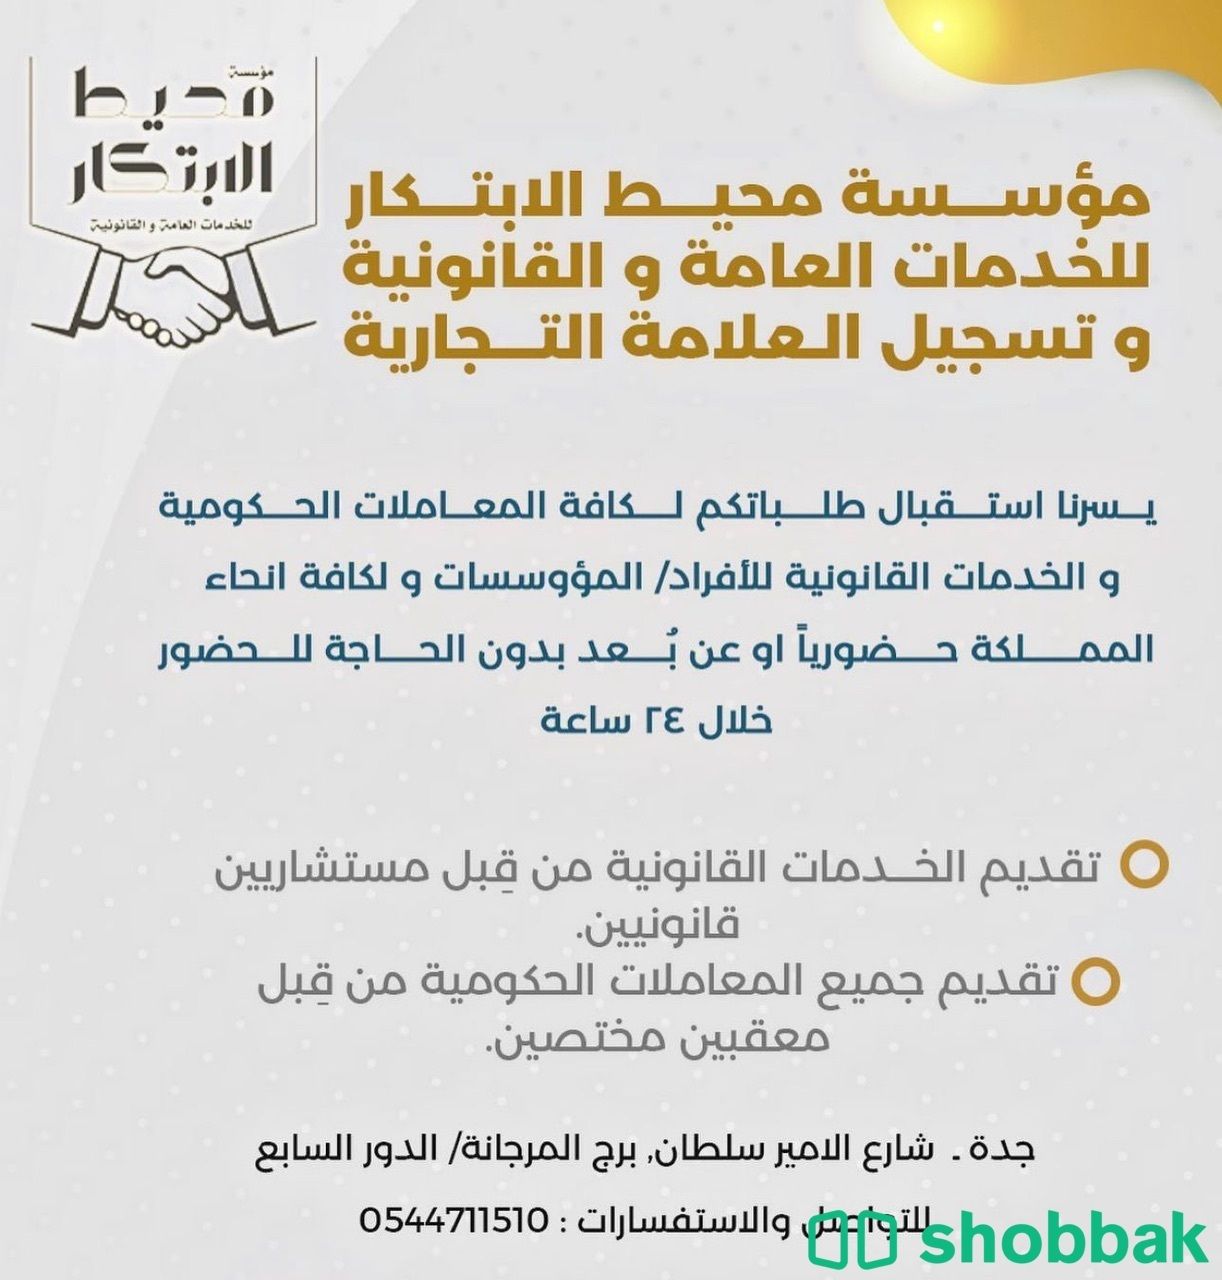 مؤوسسة محيط الابتكار للخدمات العامة و القانونية و تسجيل العلامة التجارية Shobbak Saudi Arabia